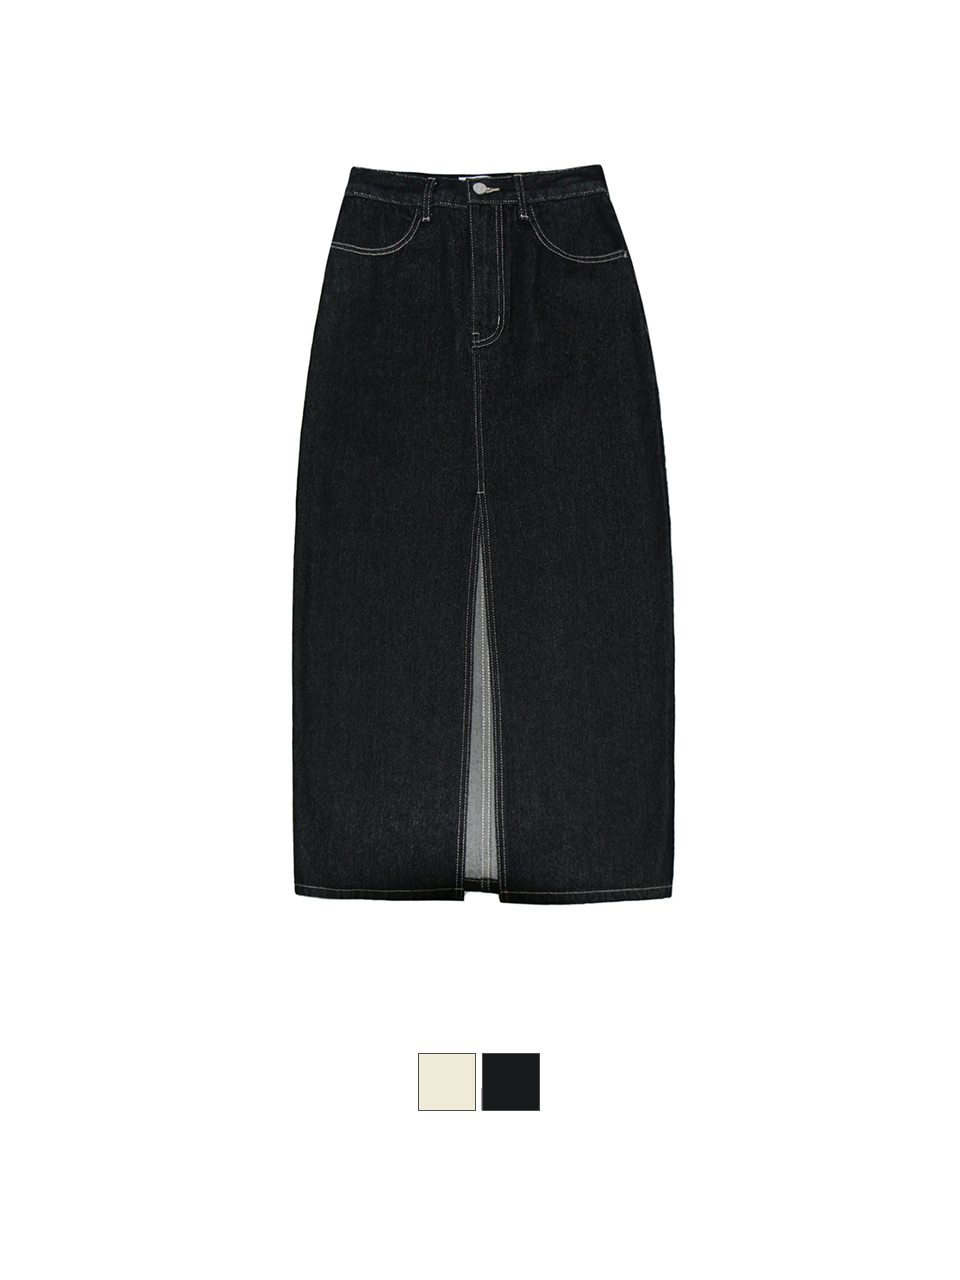 [SKIRT] Arthur Stitch Denim Skirt